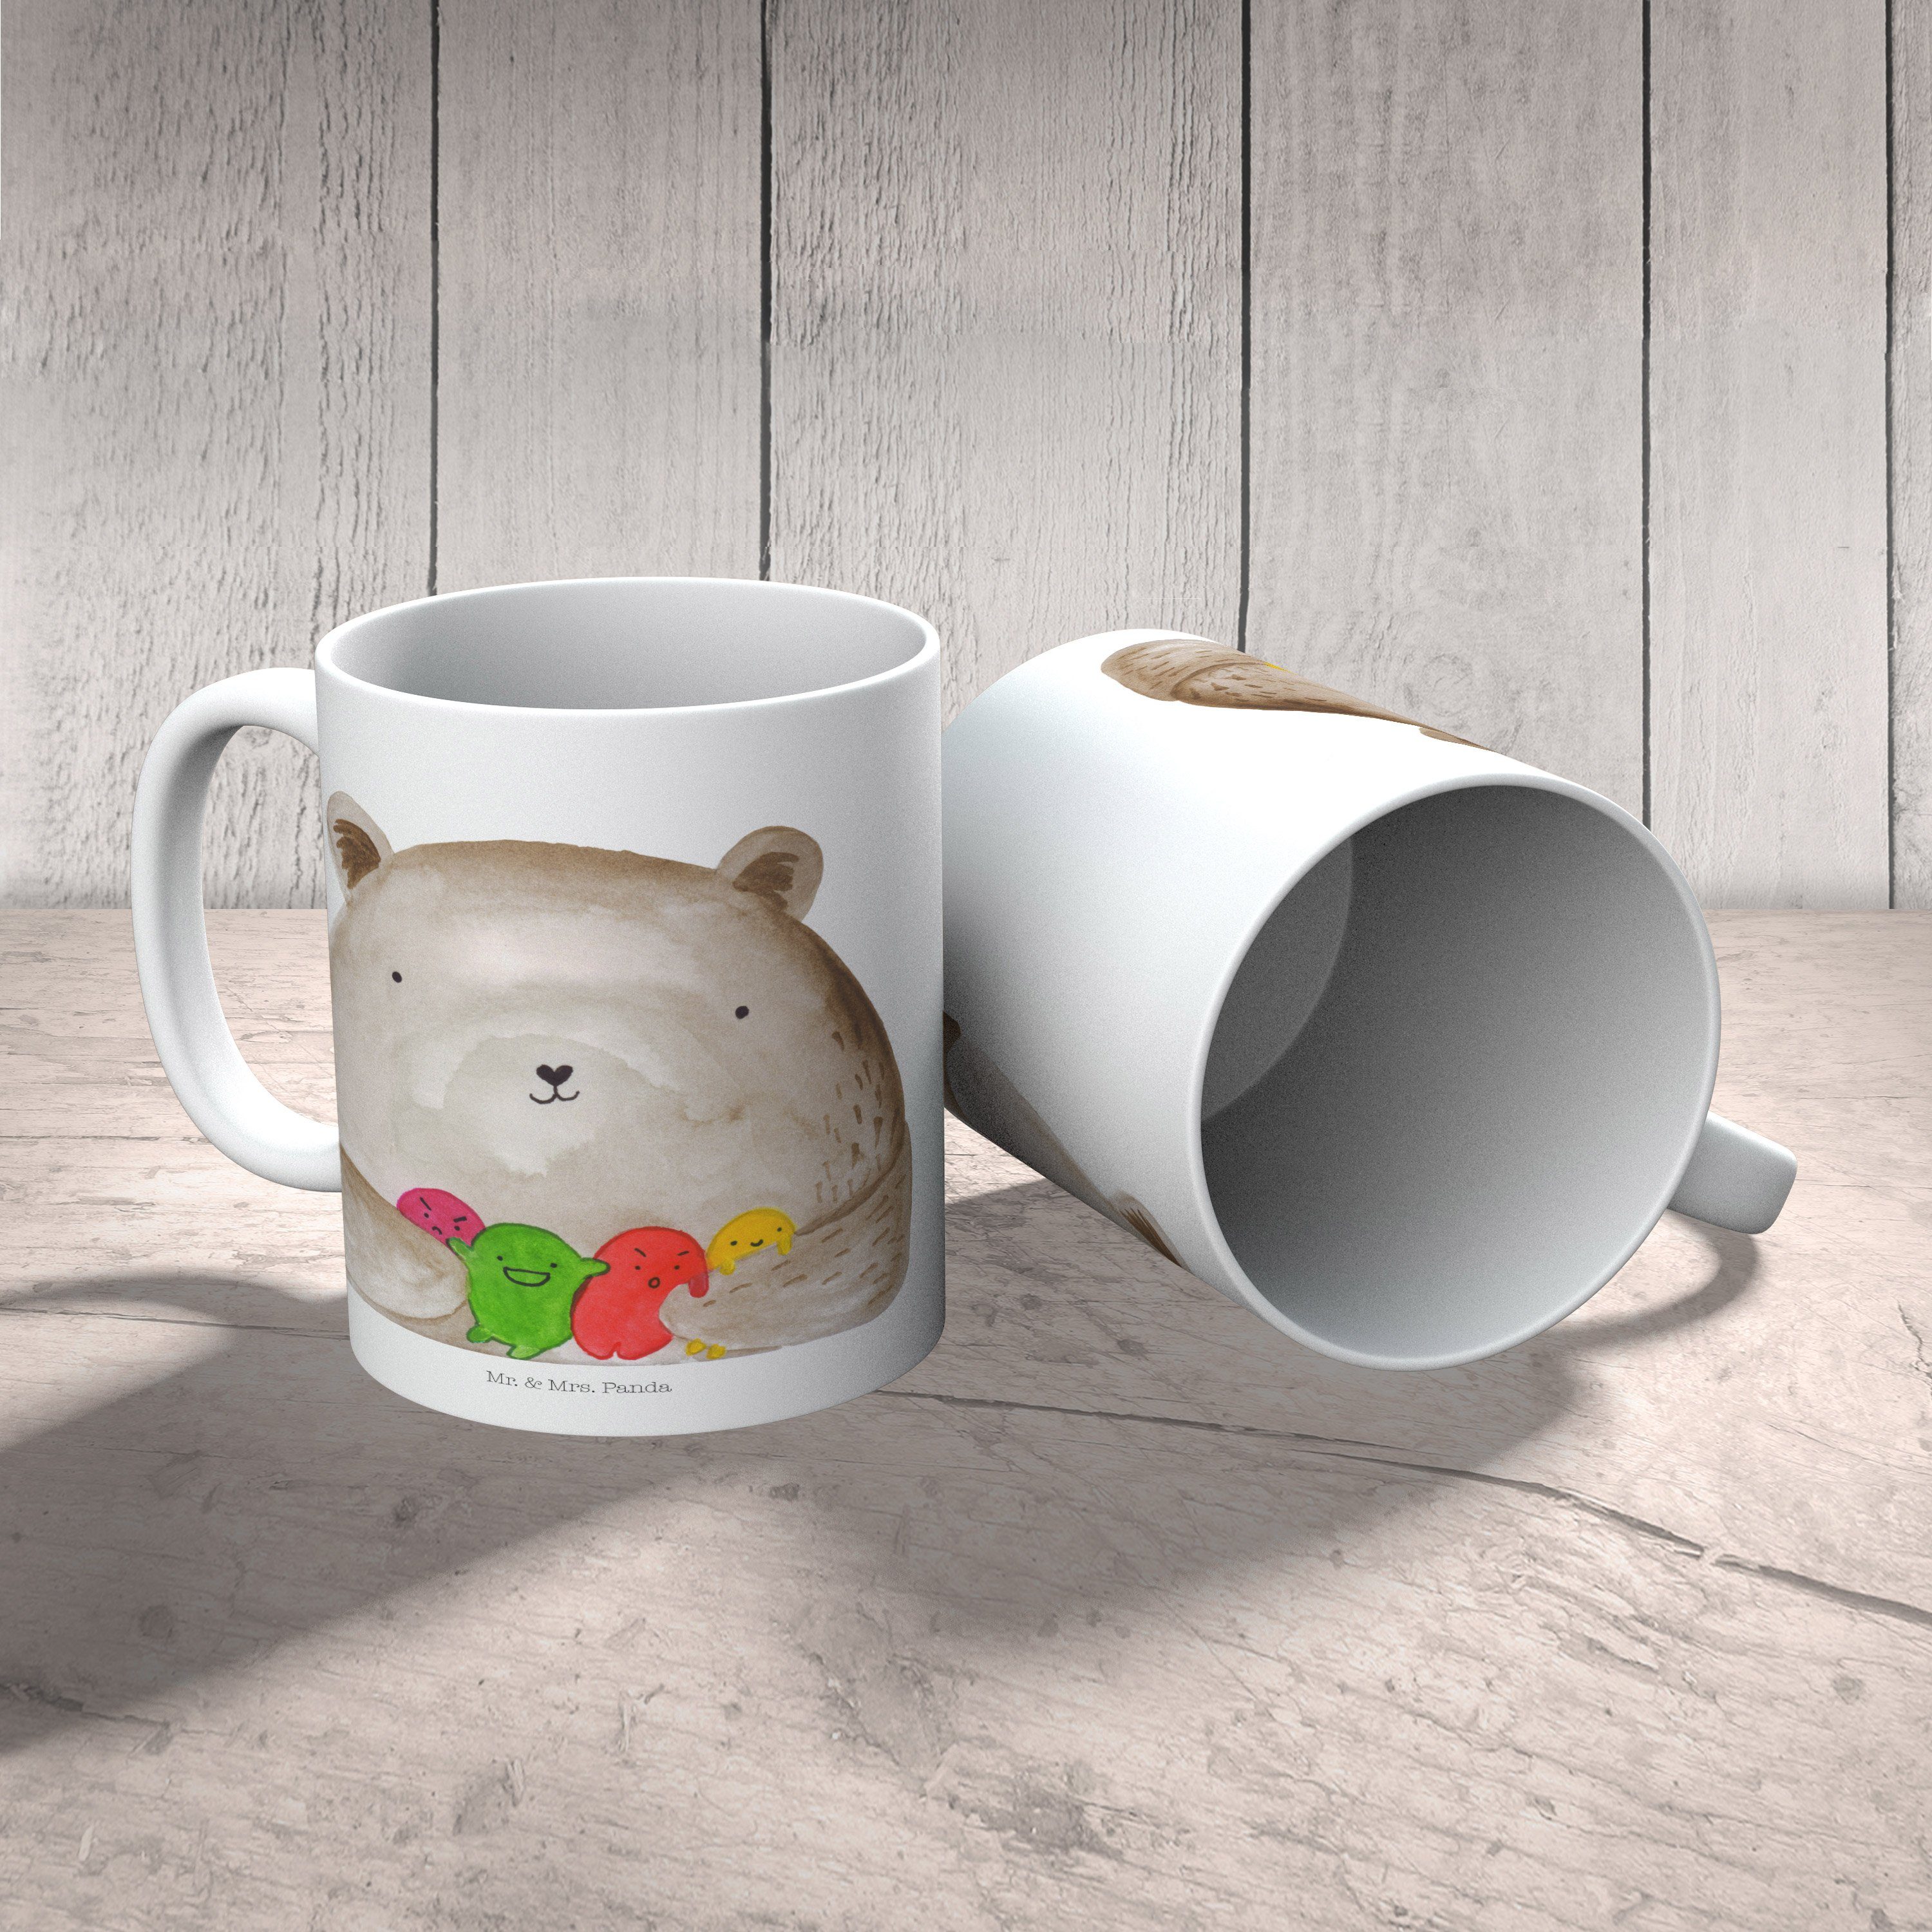 Tasse Kaffeebecher, Mr. Geschenk Panda - Bär Keramik - & Geschenk, Wahnsinn, Tasse, Mrs. Weiß Gefühl